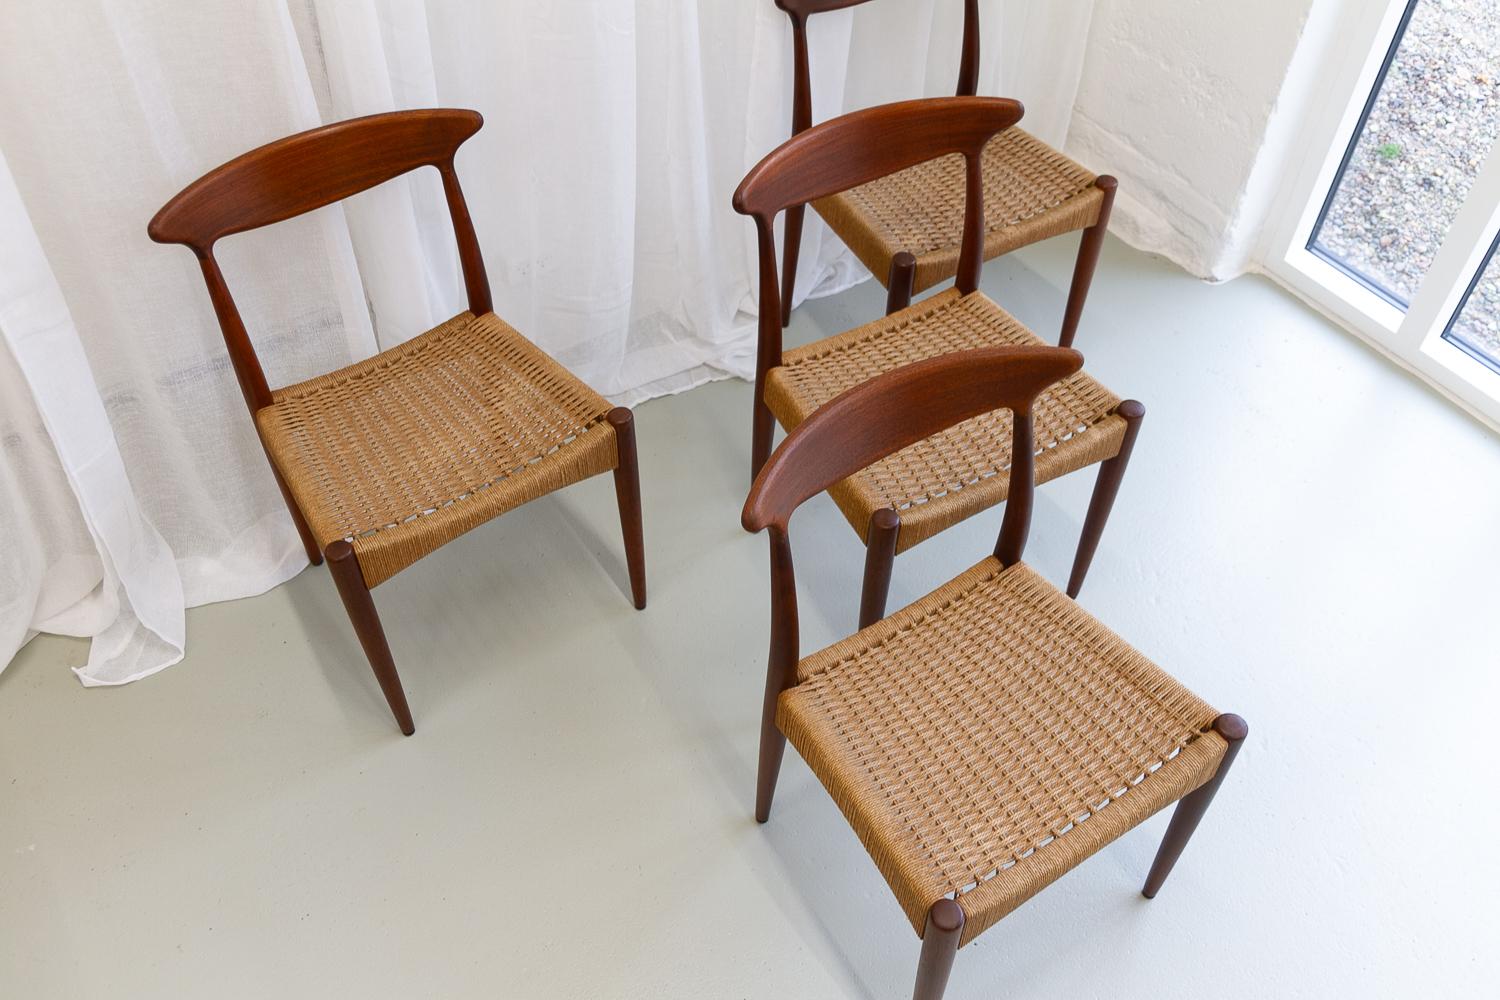 Danish Modern Teak Chairs by Arne Hovmand-Olsen for Mogens Kold, 1950s. Set of 4 For Sale 2